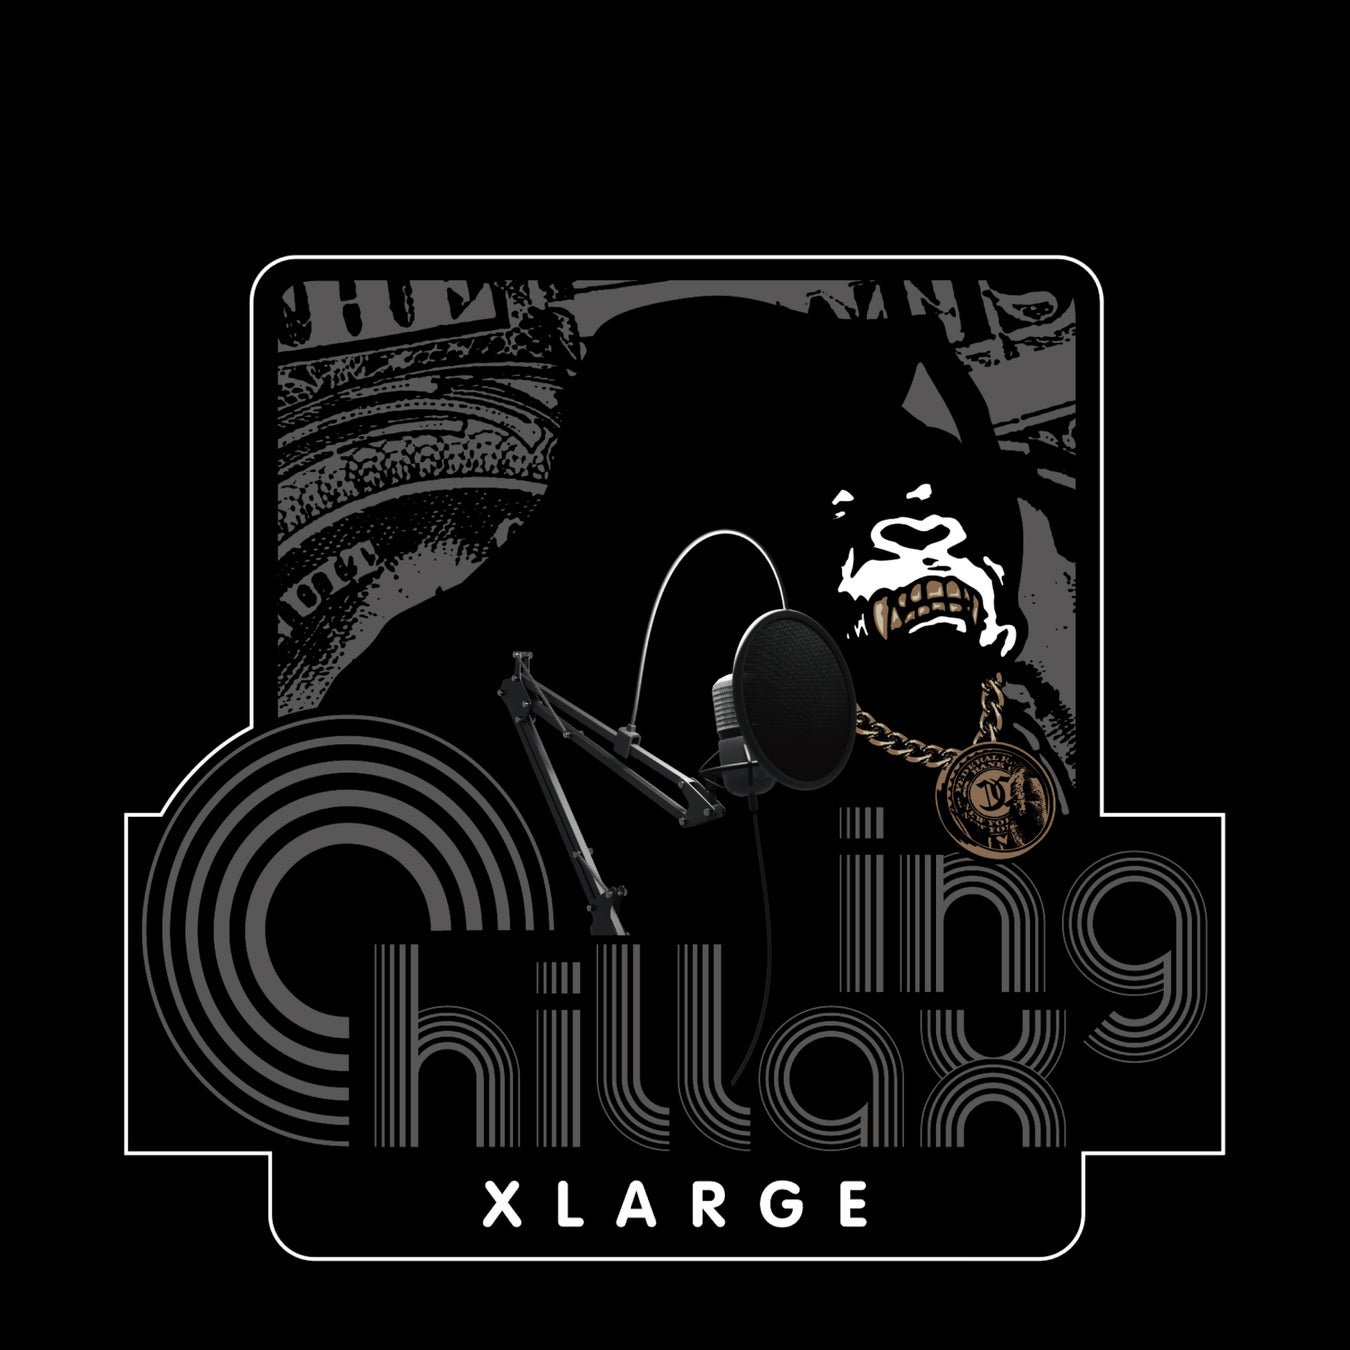 音楽レーベル“XLARGE RECORDS”からレーベル初の1stアルバム『XLARGE x Chillaxing』を発売